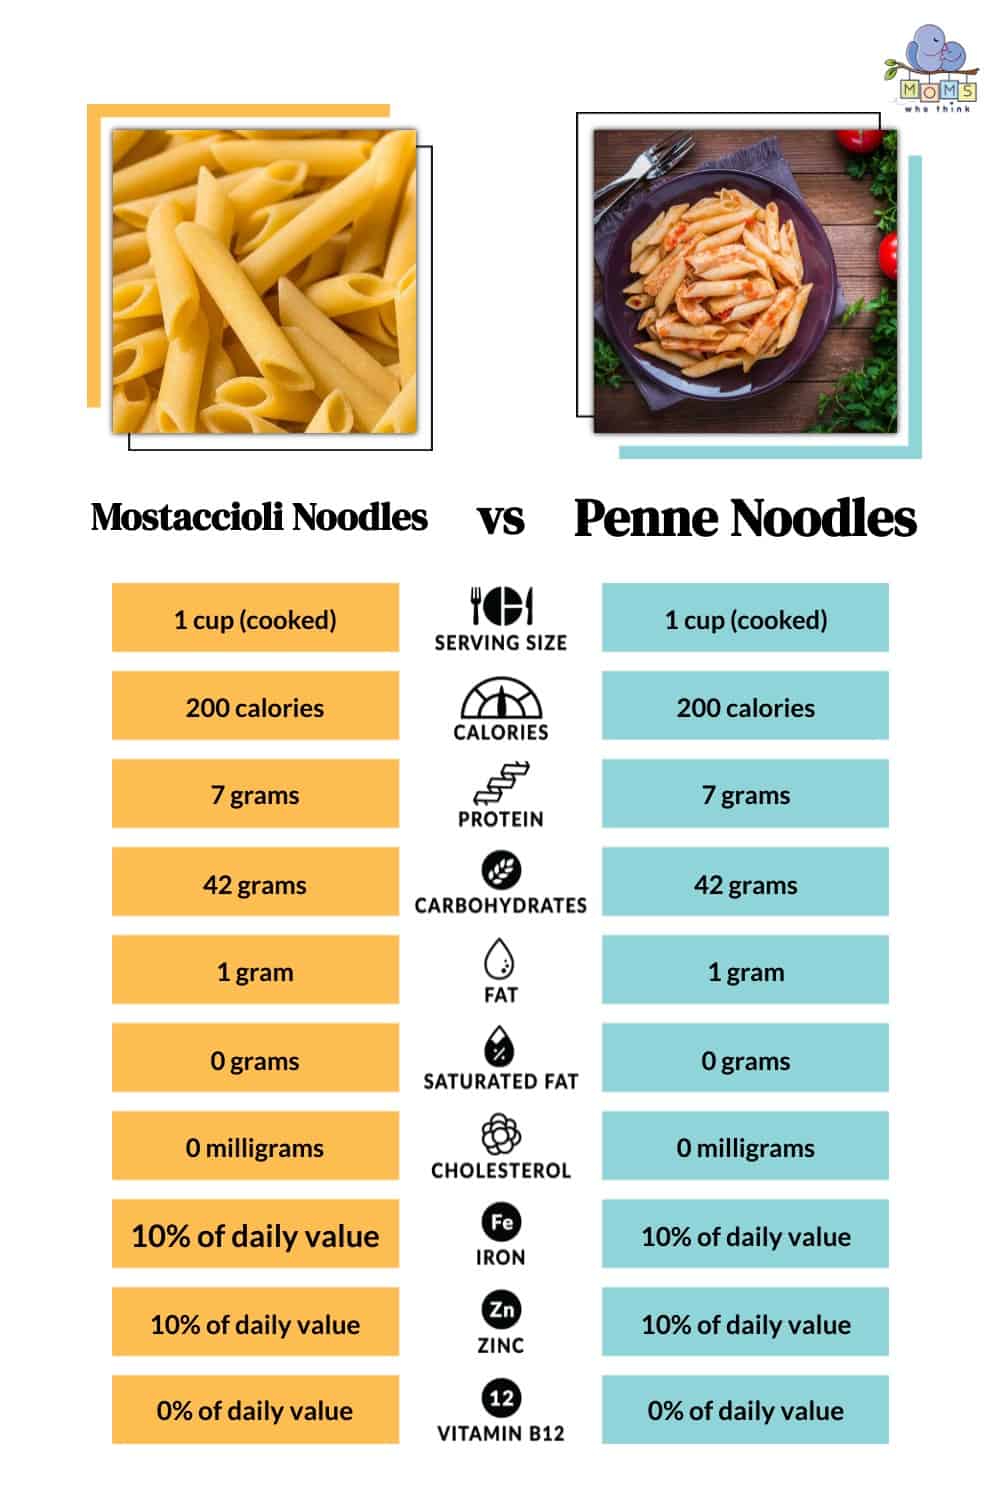 Mostaccioli Noodles vs Penne Noodles Nutrition Comparison 